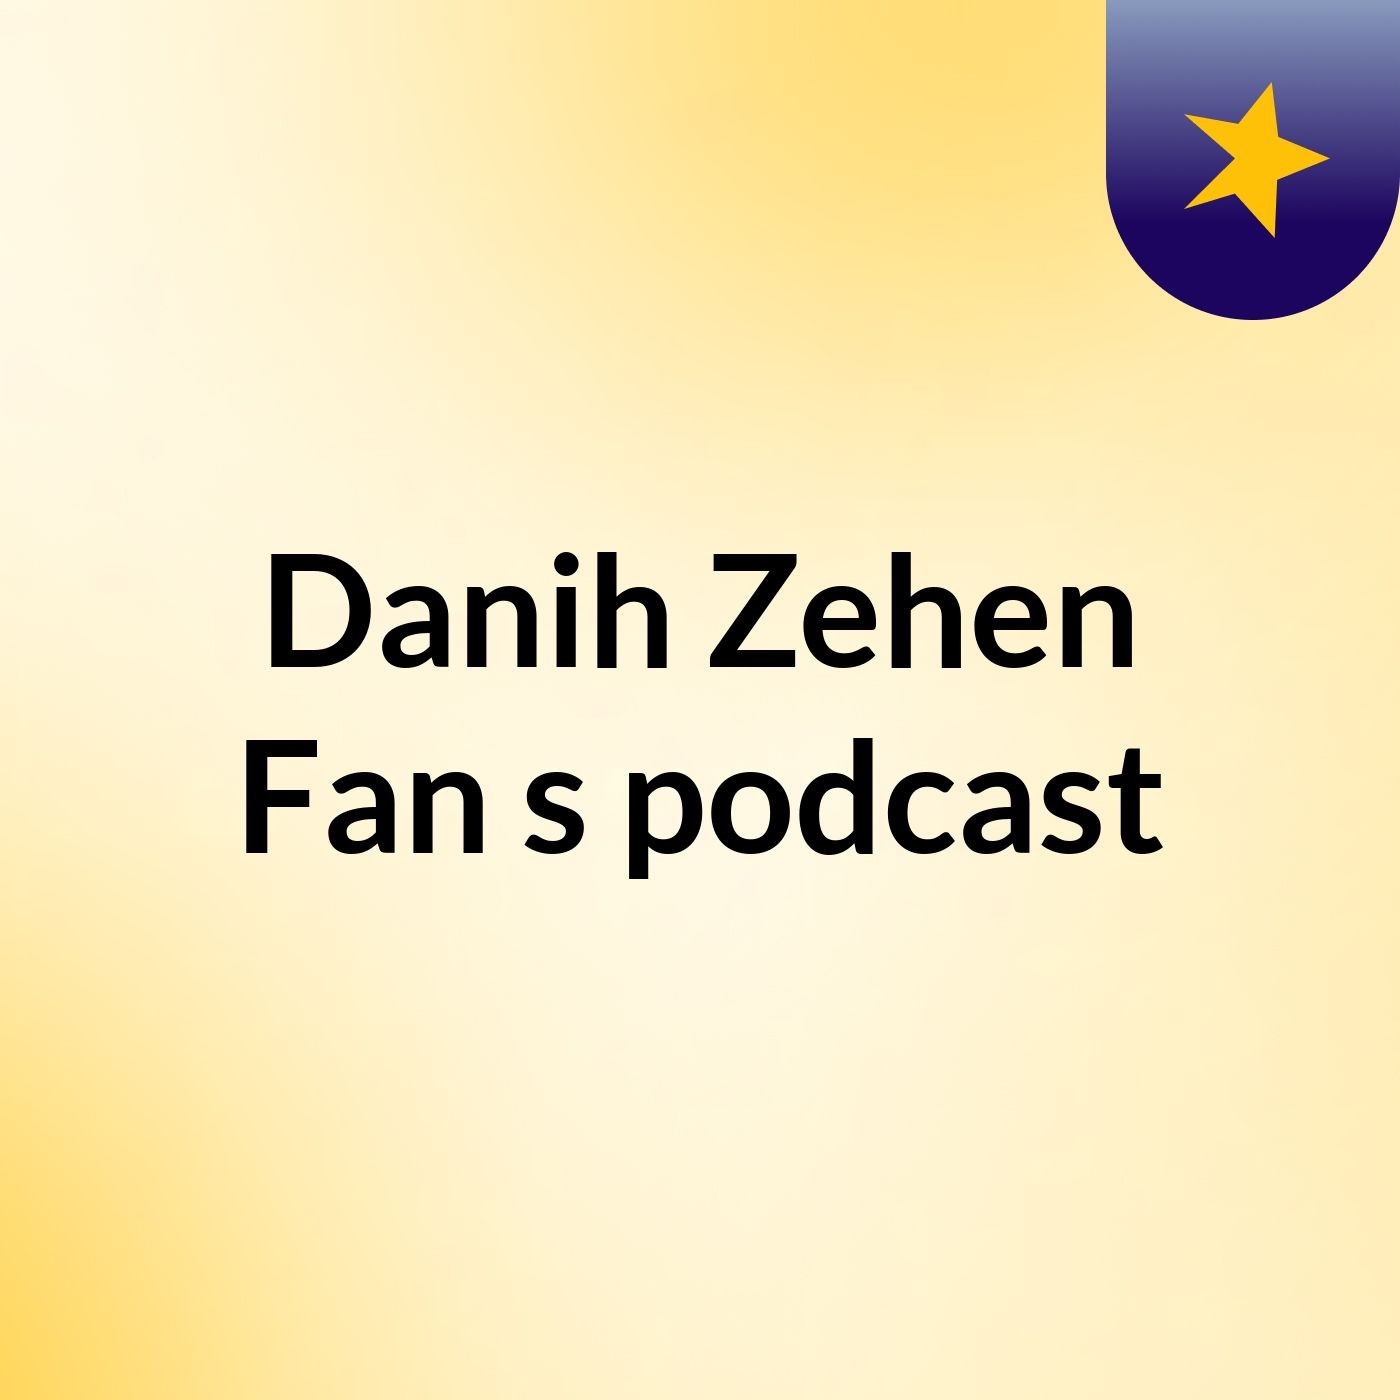 Episode 2 - Danih Zehen Fan's podcast